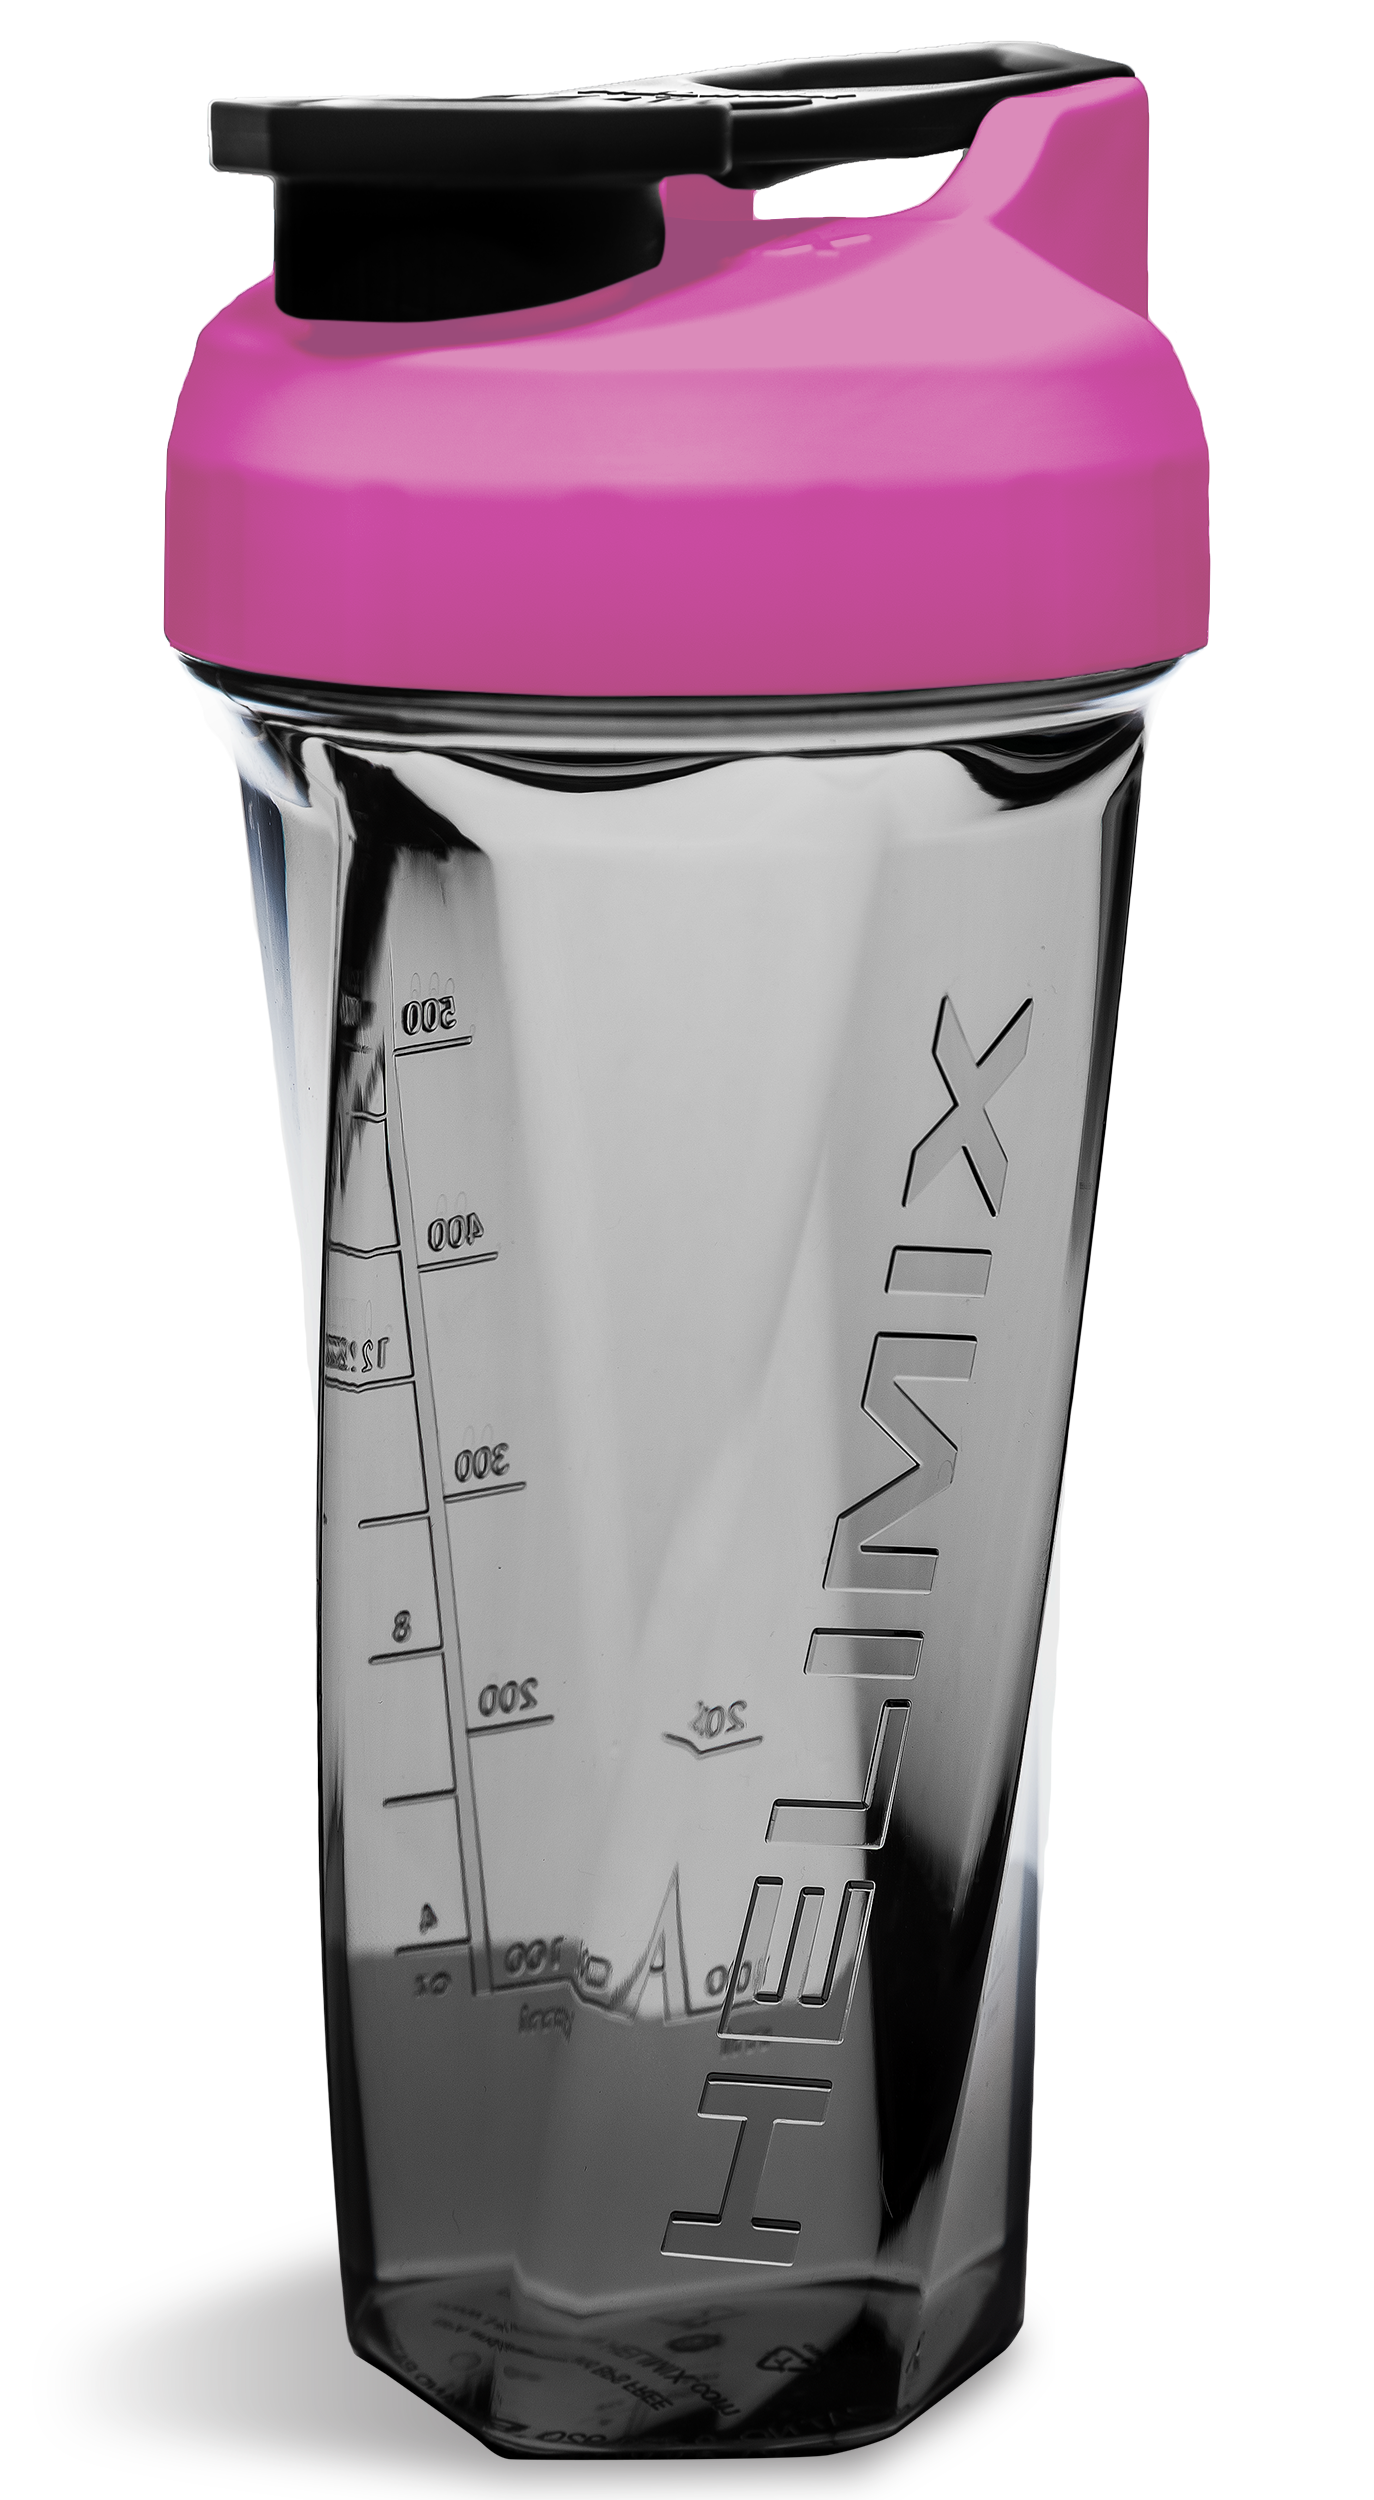 Cute 20 oz Blender Bottle  Cool Shaker Bottle - Pink & White